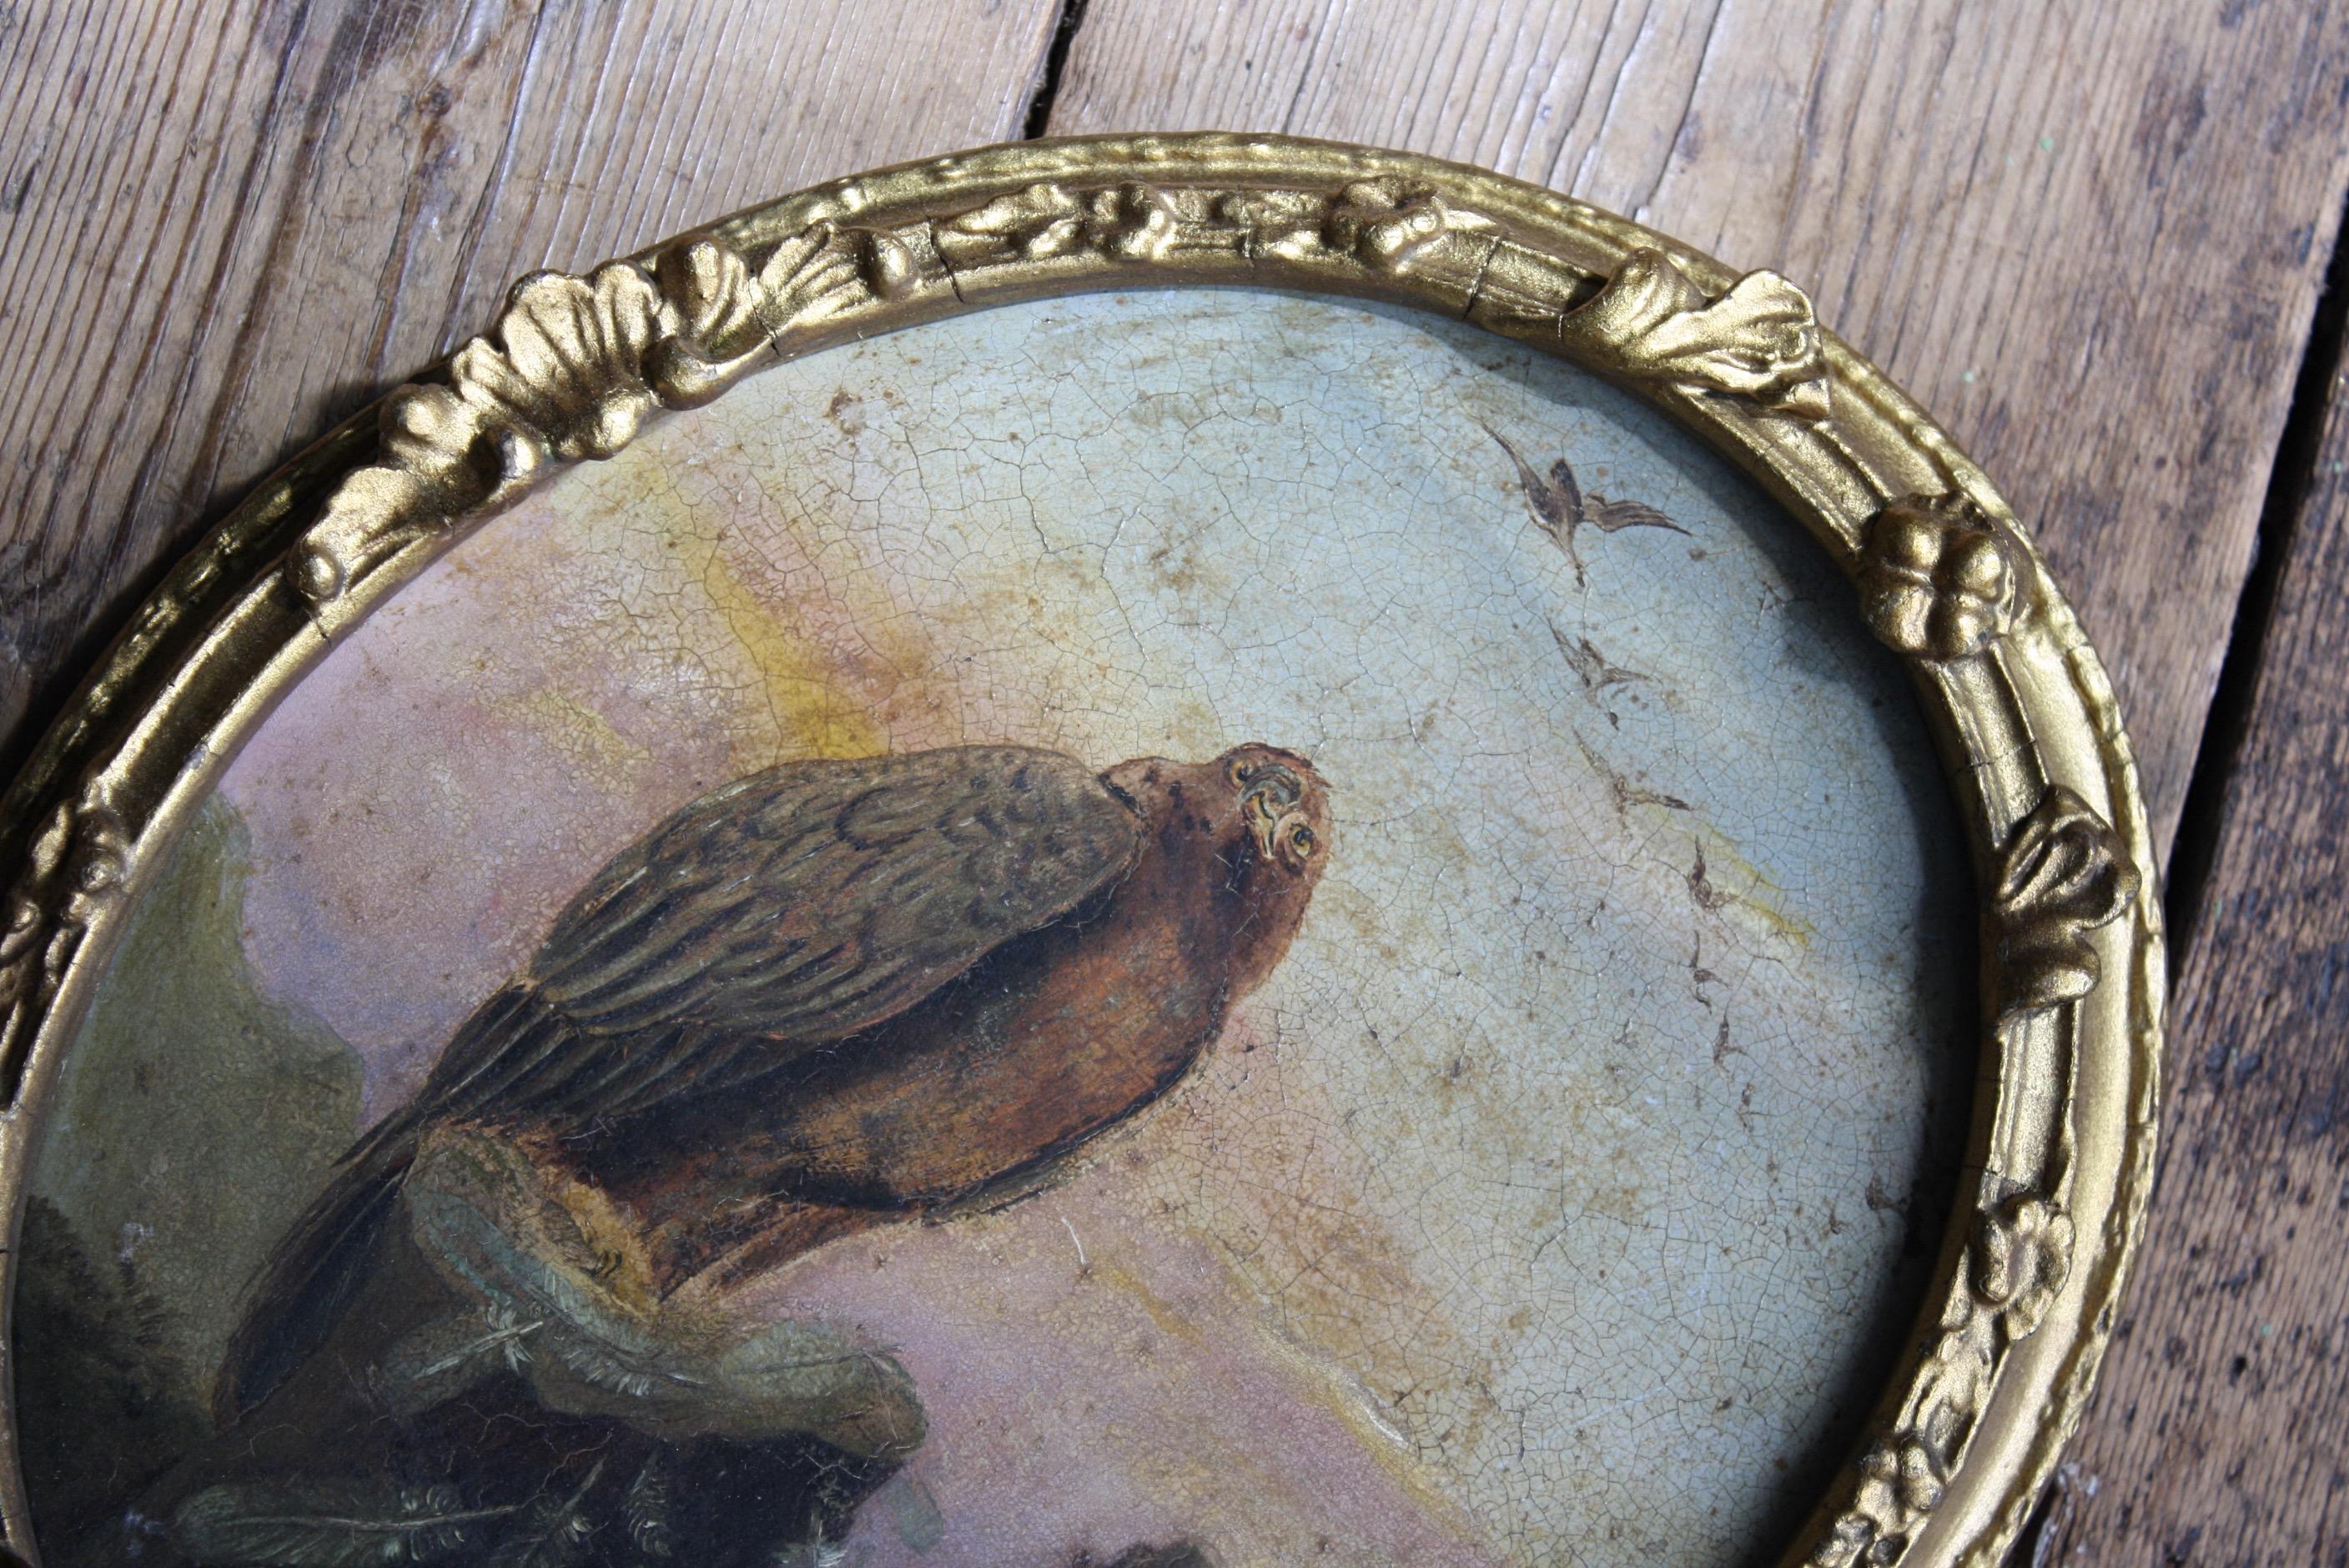 Une charmante représentation d'un aigle royal perché sur une paroi rocheuse, bien exécutée à l'huile sur étain, avec une agréable palette de rose et de jaune.

Datant du XIXe siècle, il est placé dans son cadre ovale d'origine, avec quelques travaux